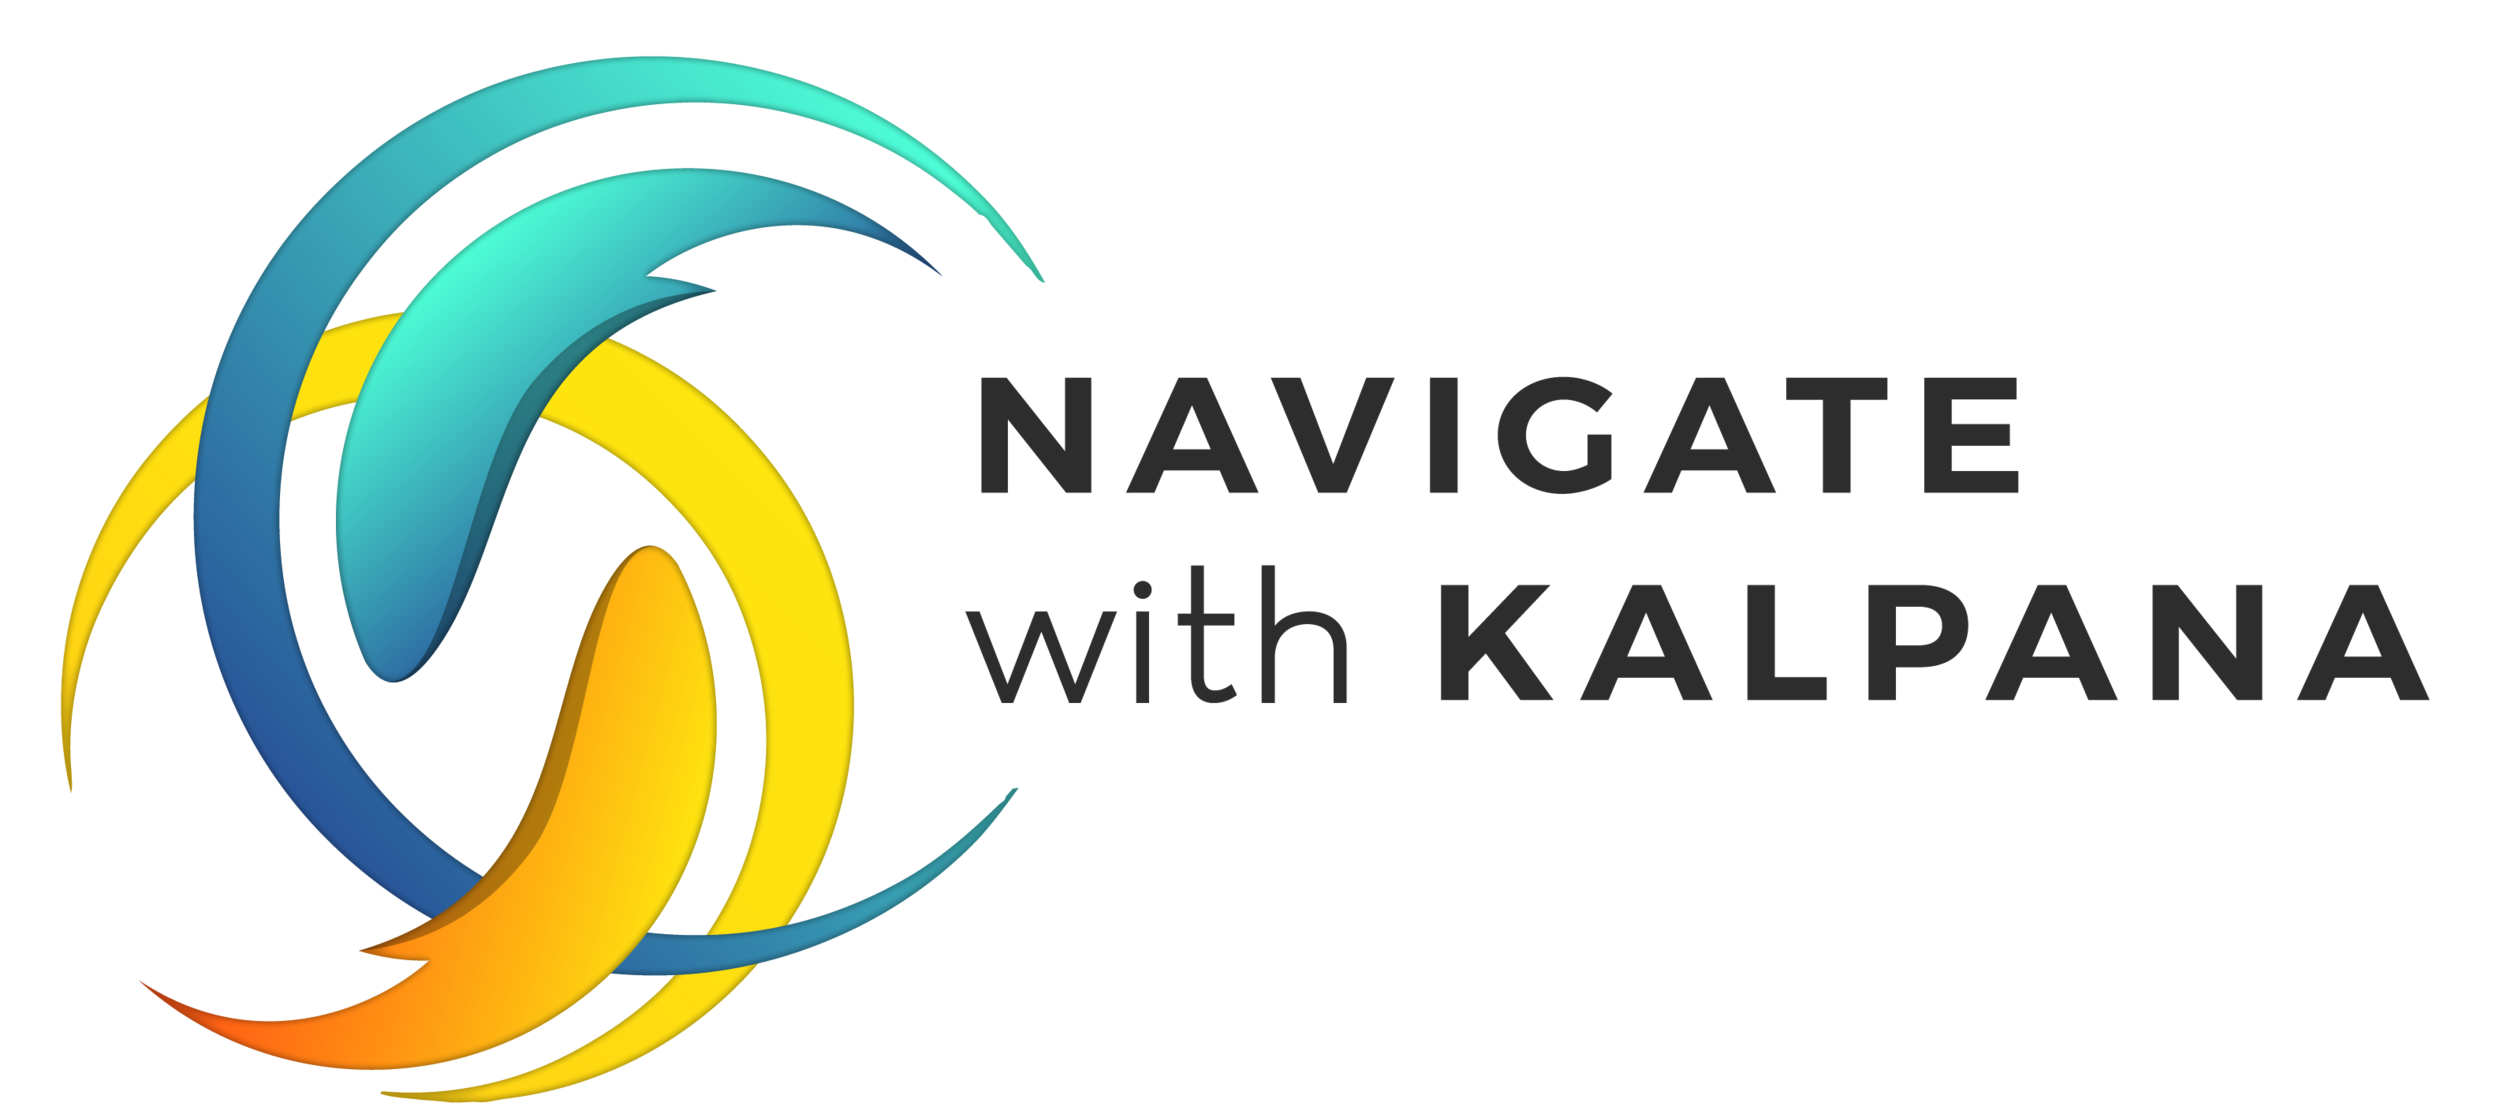 Navigate with Kalpana